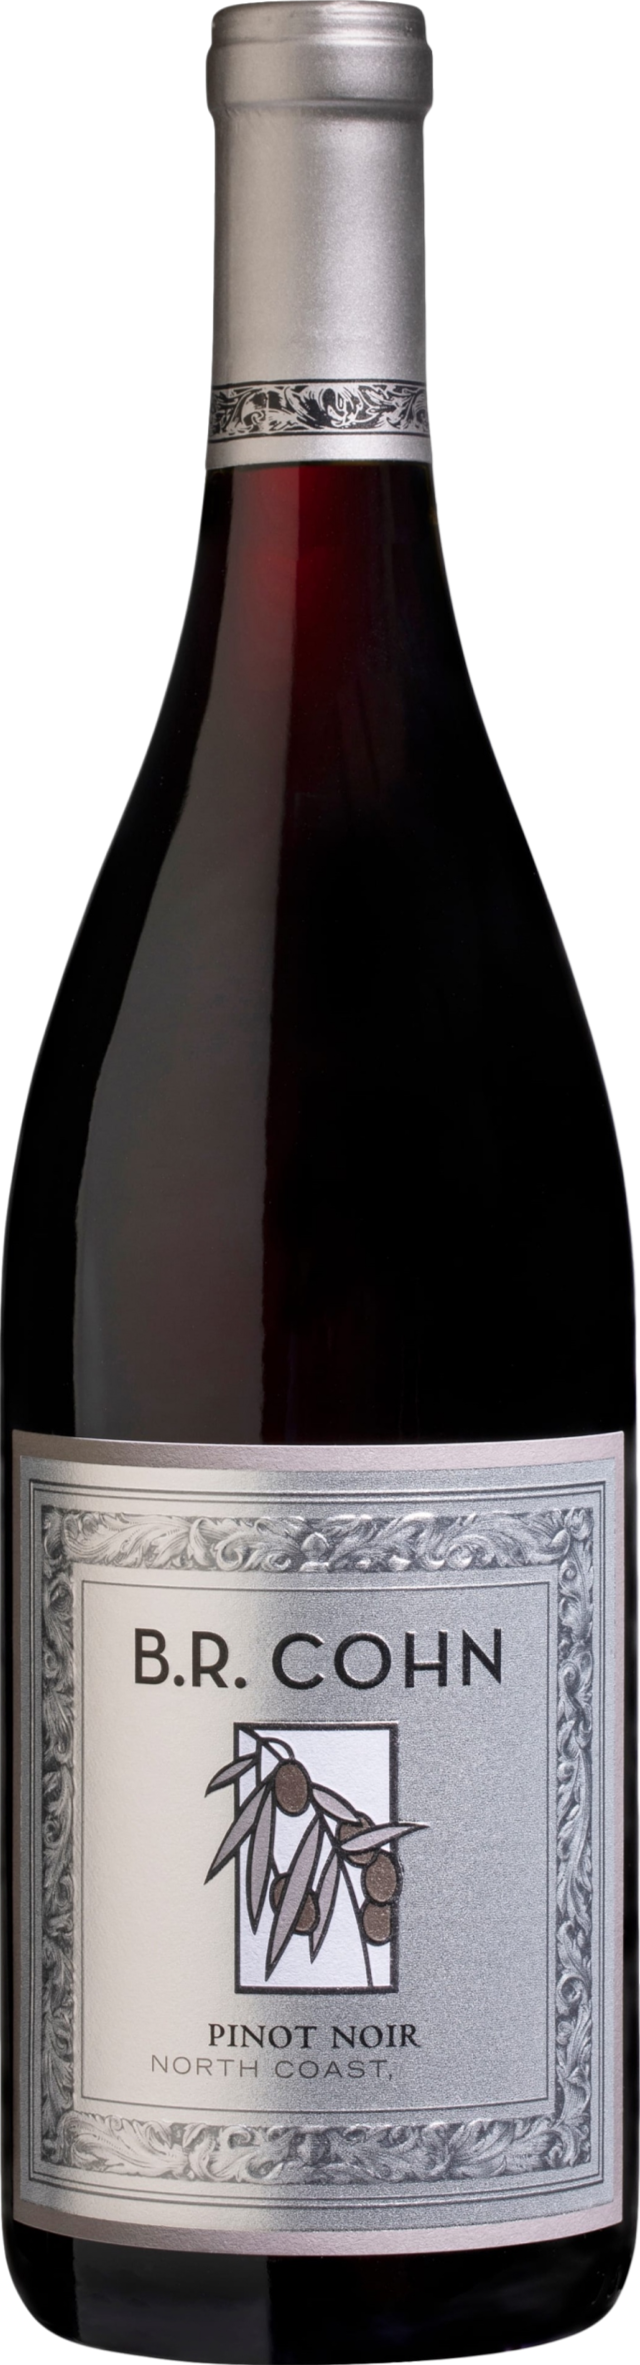 B. R. Cohn Silver Label Pinot Noir 2018 B. R. Cohn 8wines DACH